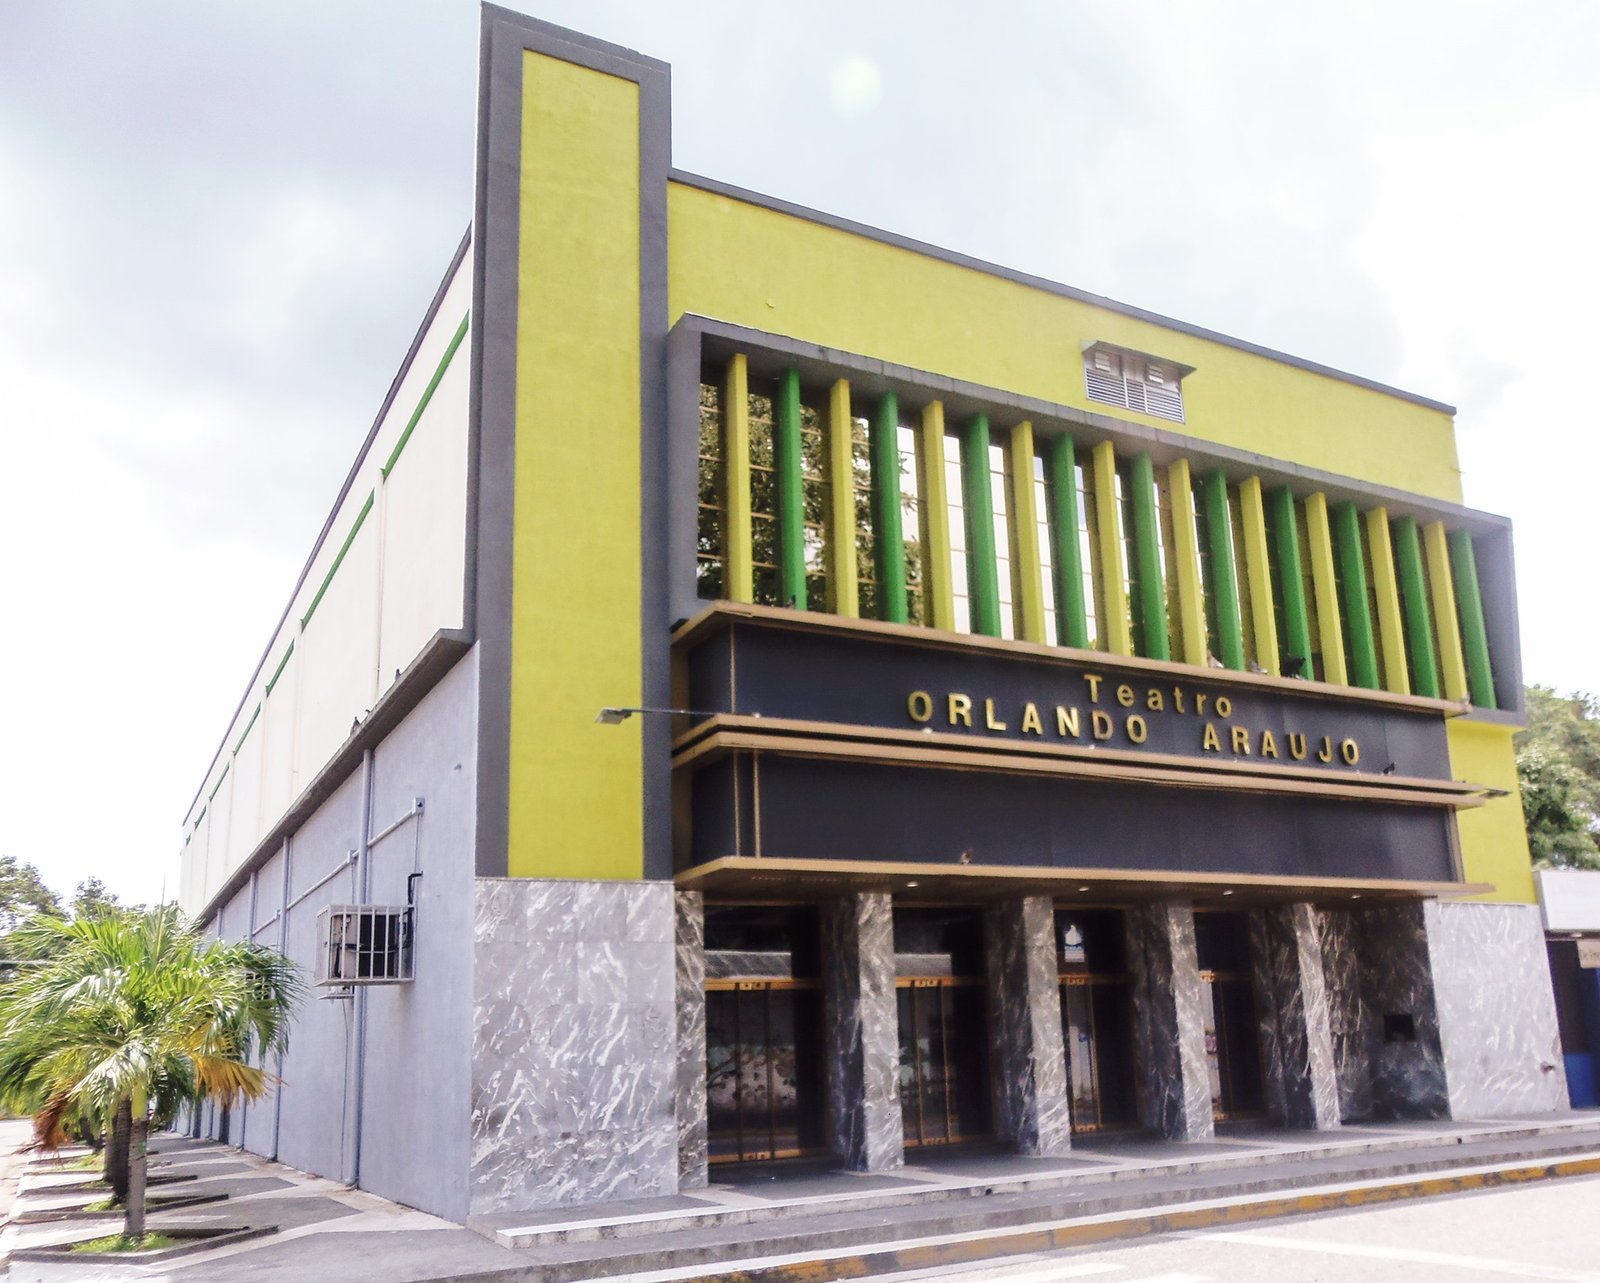 Teatro Orlando Araujo